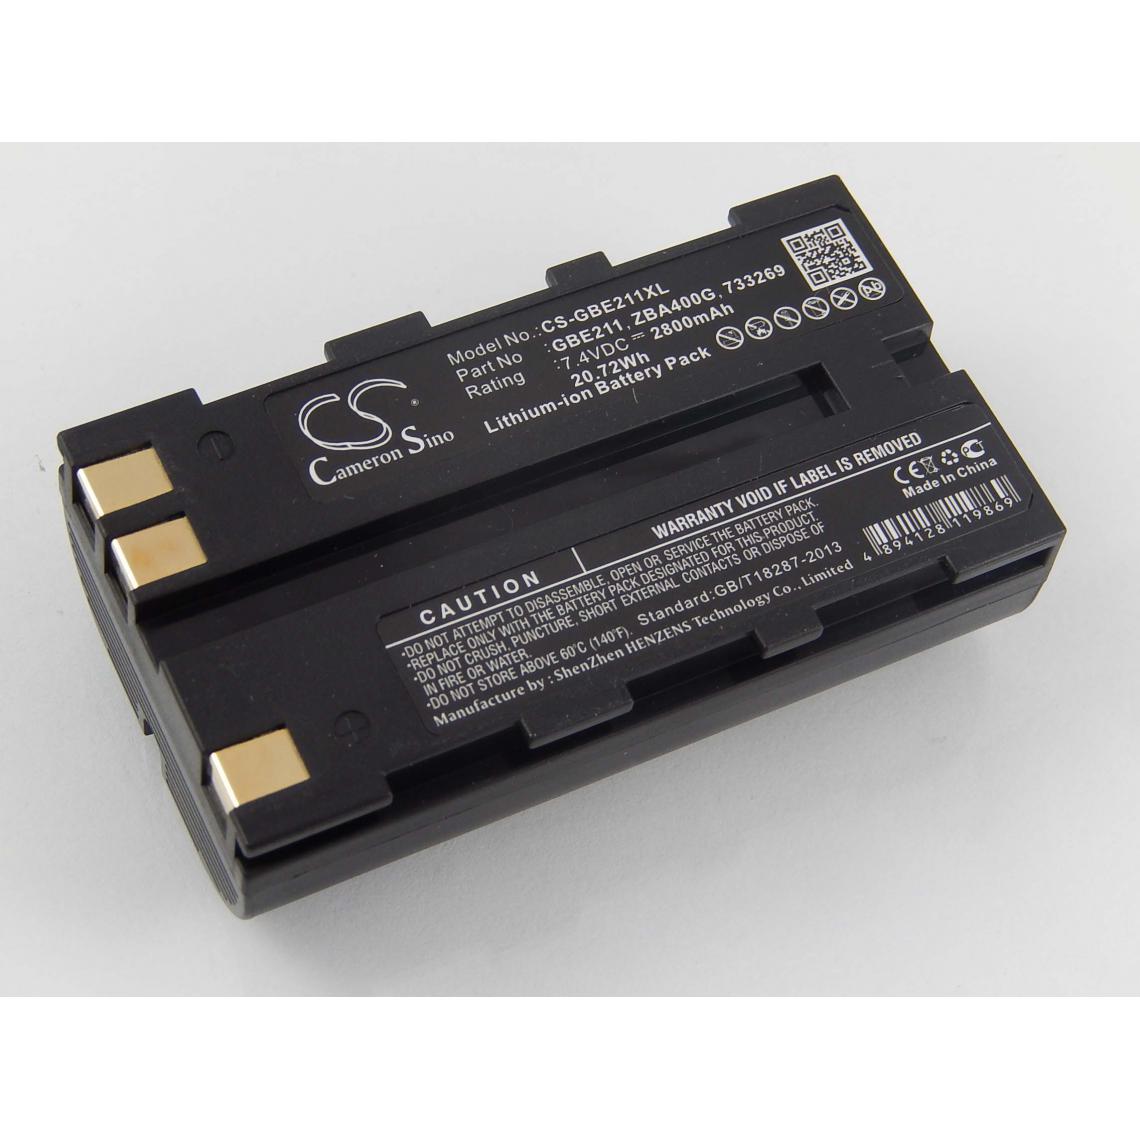 Vhbw - vhbw Batterie compatible avec Leica Viva GS08 plus NetRover dispositif de mesure laser, outil de mesure (2800mAh, 7,4V, Li-ion) - Piles rechargeables